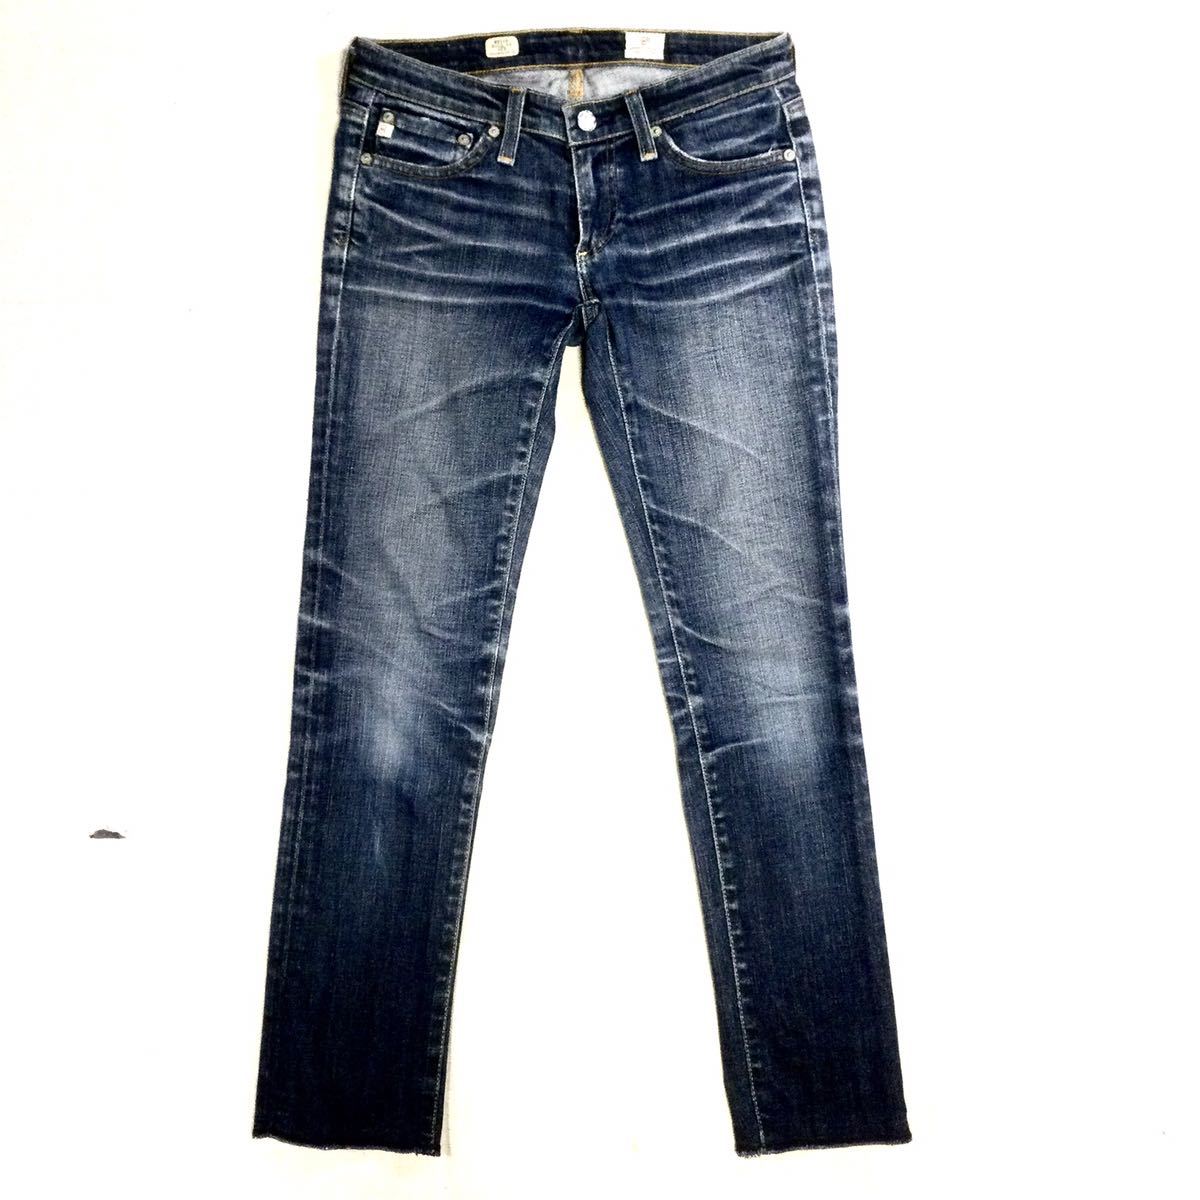 16163円 お求めやすく価格改定 Adriano Goldschmied ファッション ジーンズ Womens Blue Denim Whisker Wash Skinny Jeans 25